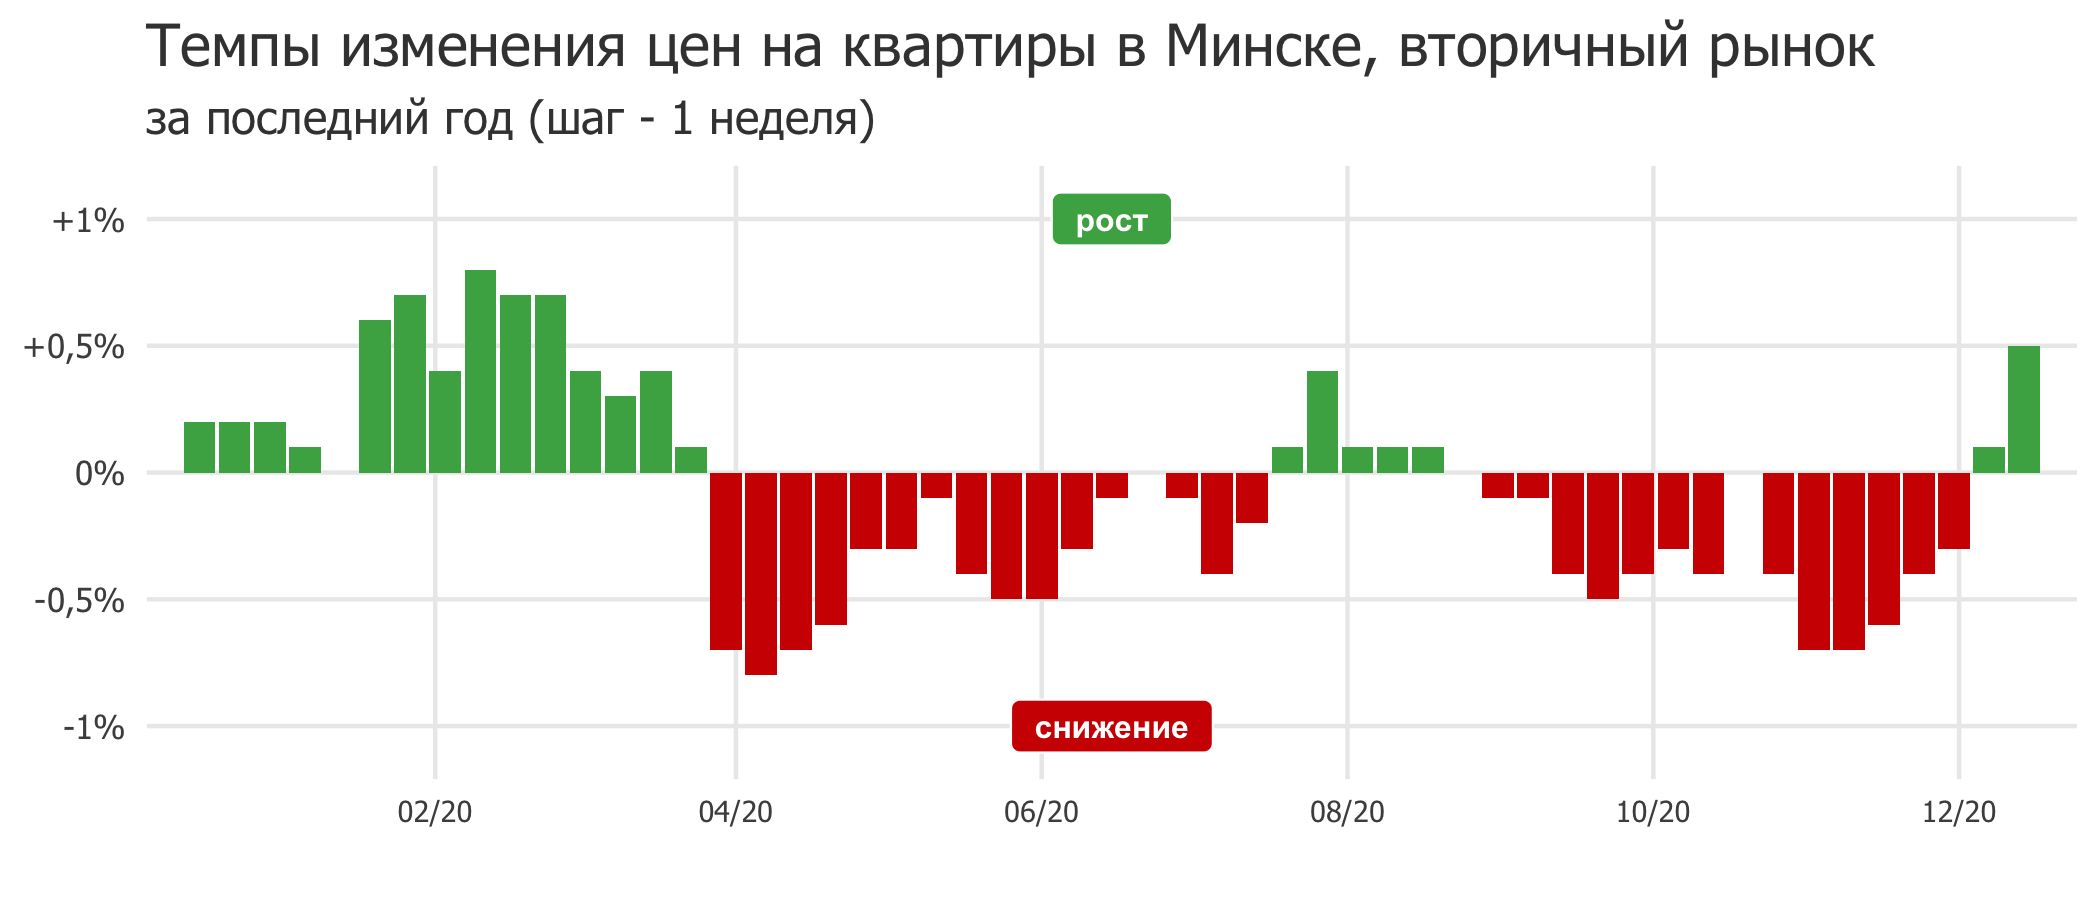 Мониторинг цен предложения квартир в Минске за 7-14 декабря 2020 года